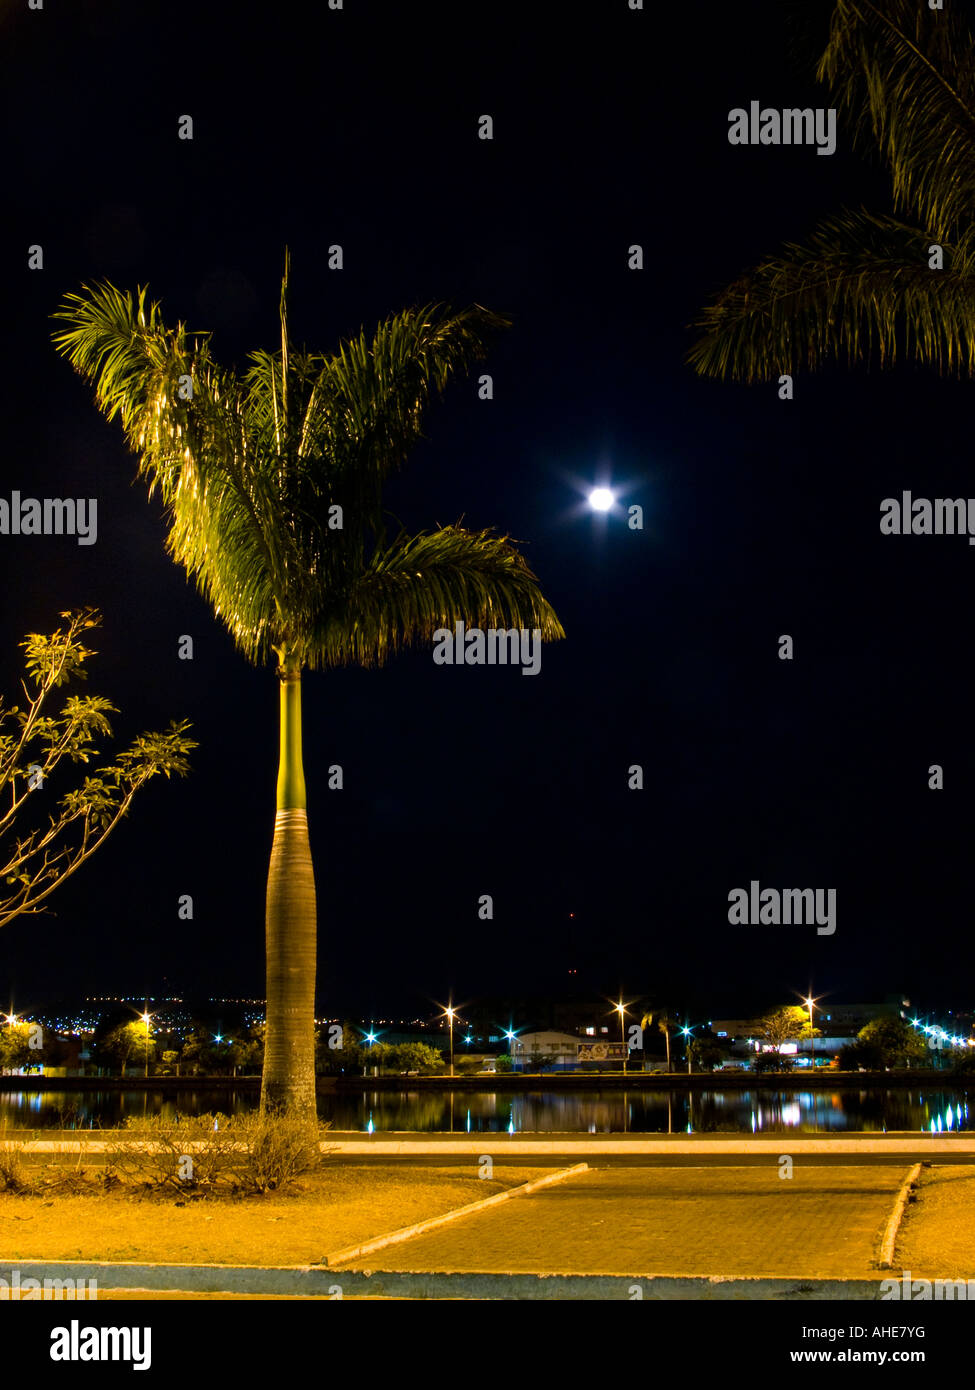 Photo de nuit d'un palmier avec lune sur l'arrière-plan Banque D'Images